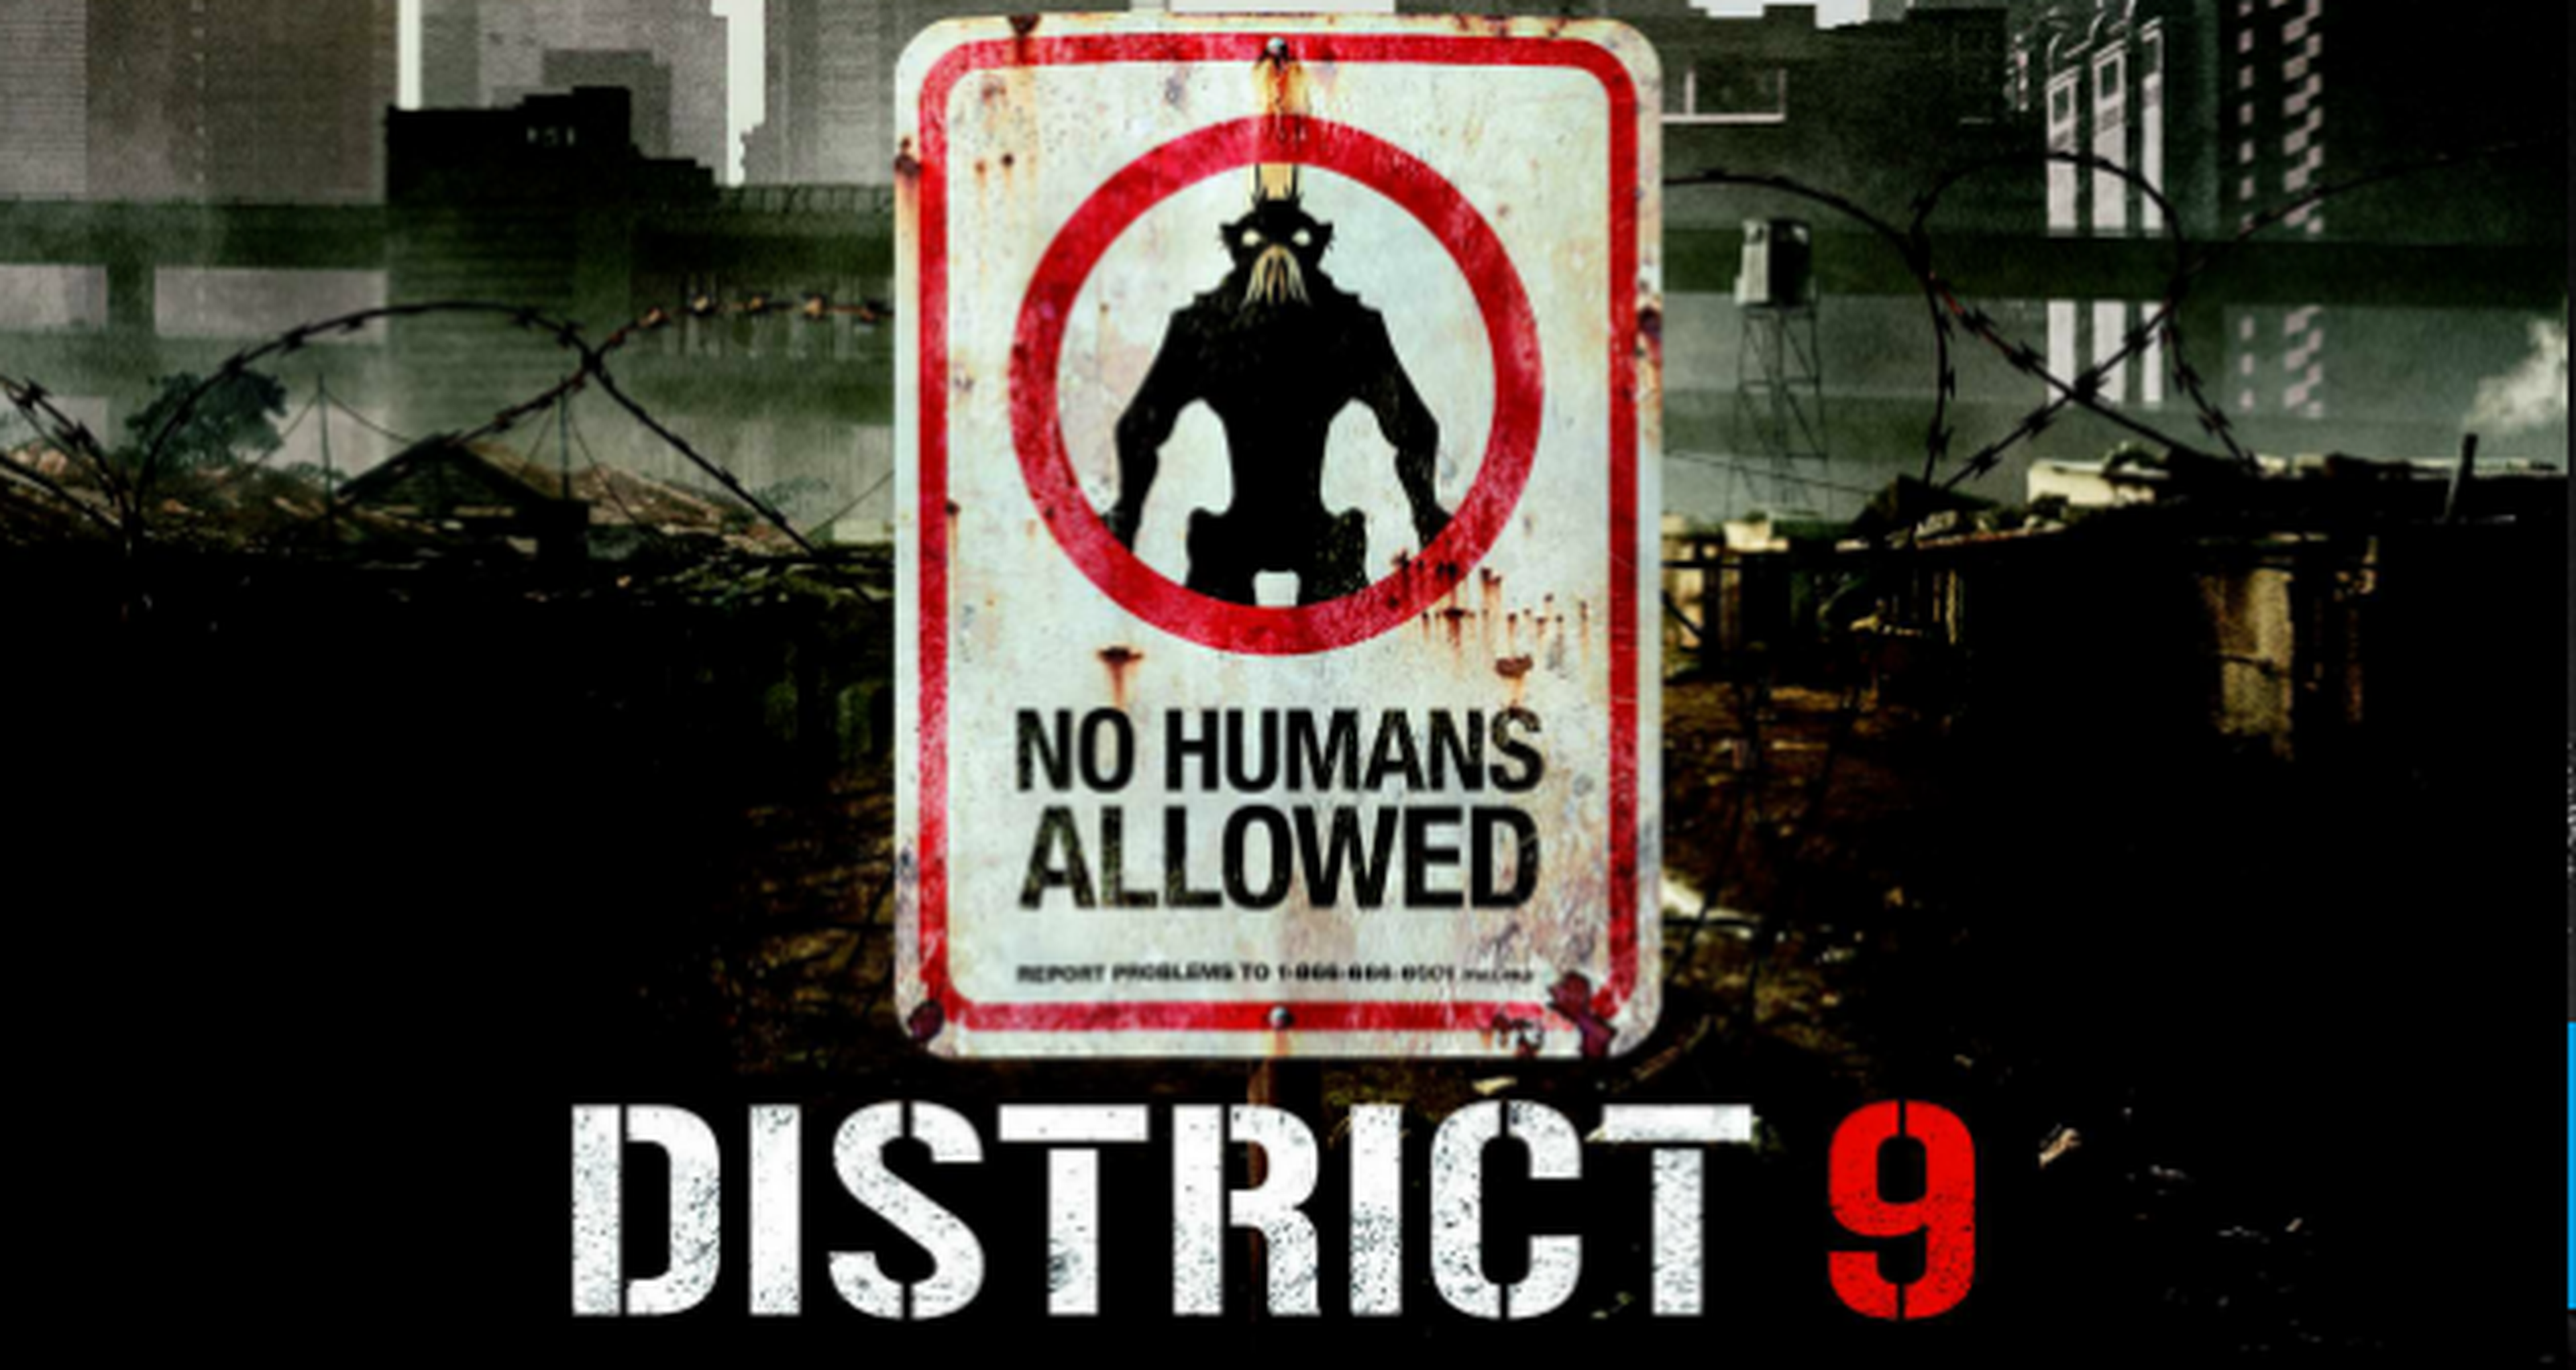 Cine de ciencia ficción: crítica de Distrito 9